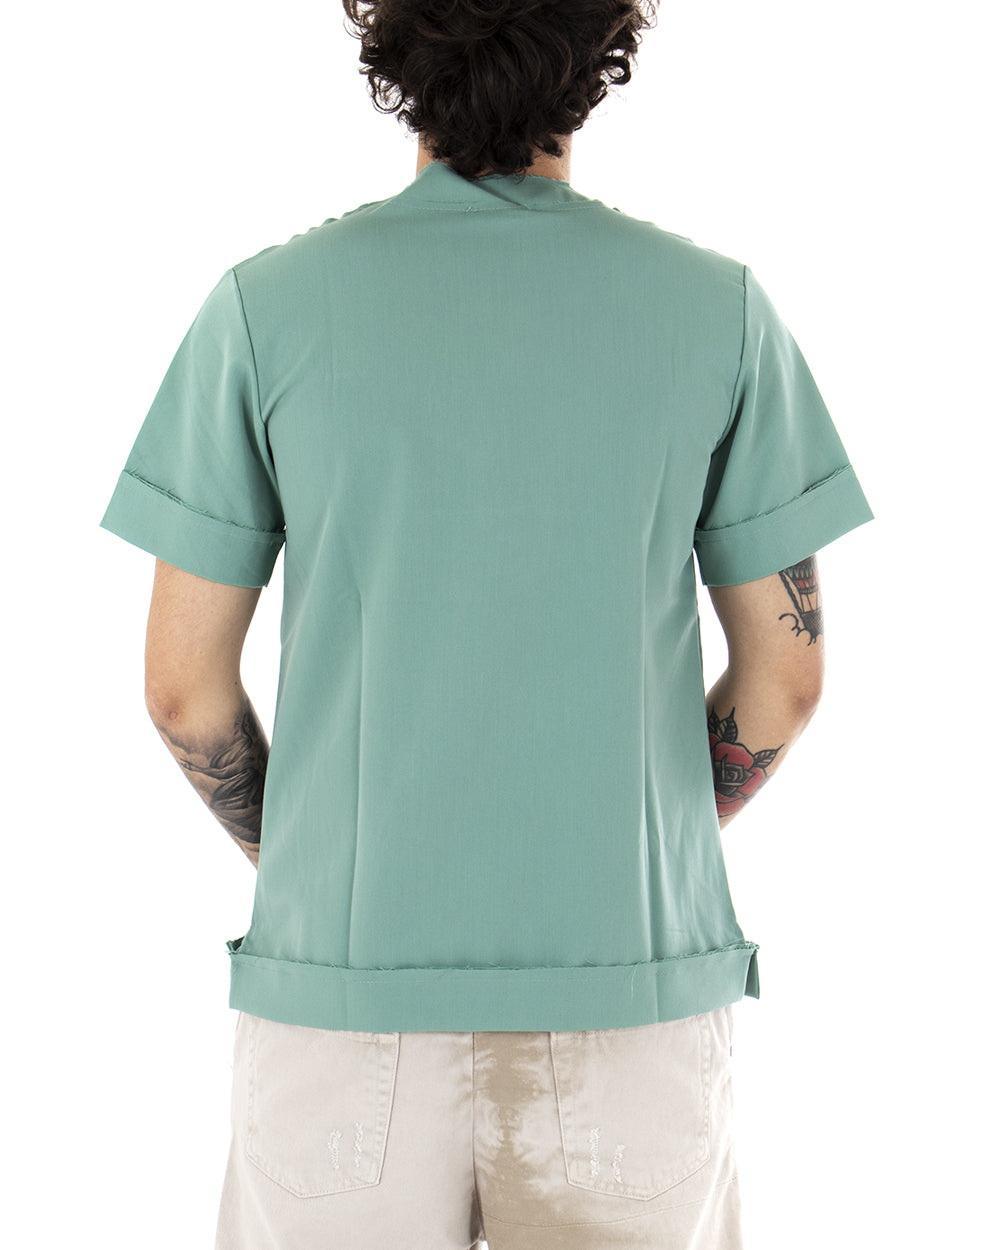 T-Shirt Uomo Maglietta Verde Acqua Tinta Unita Risvolti Maniche Corte Casual GIOSAL